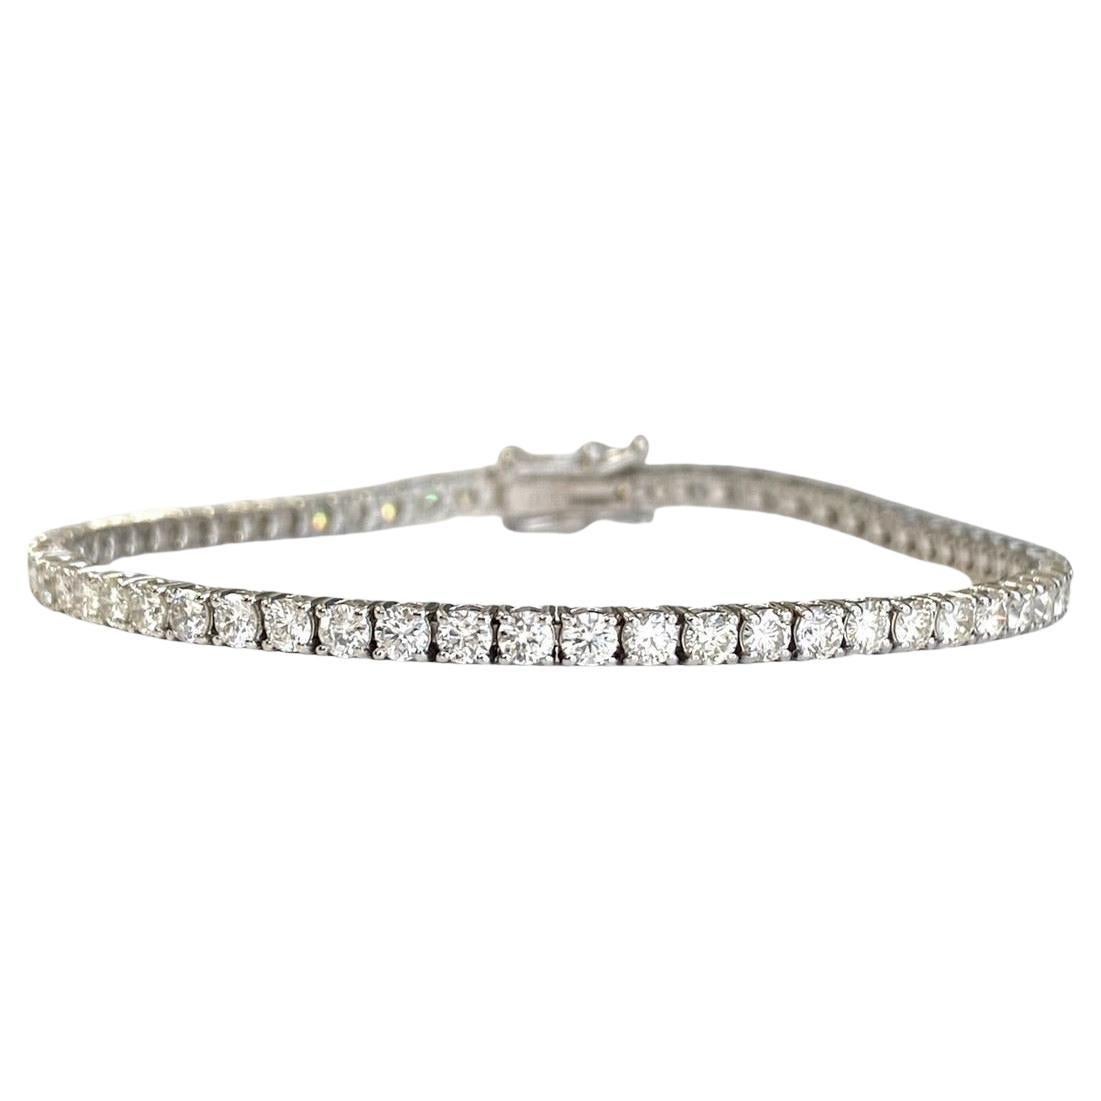 Bracelet tennis en or blanc 14 carats avec diamants pesant 3,93 carats